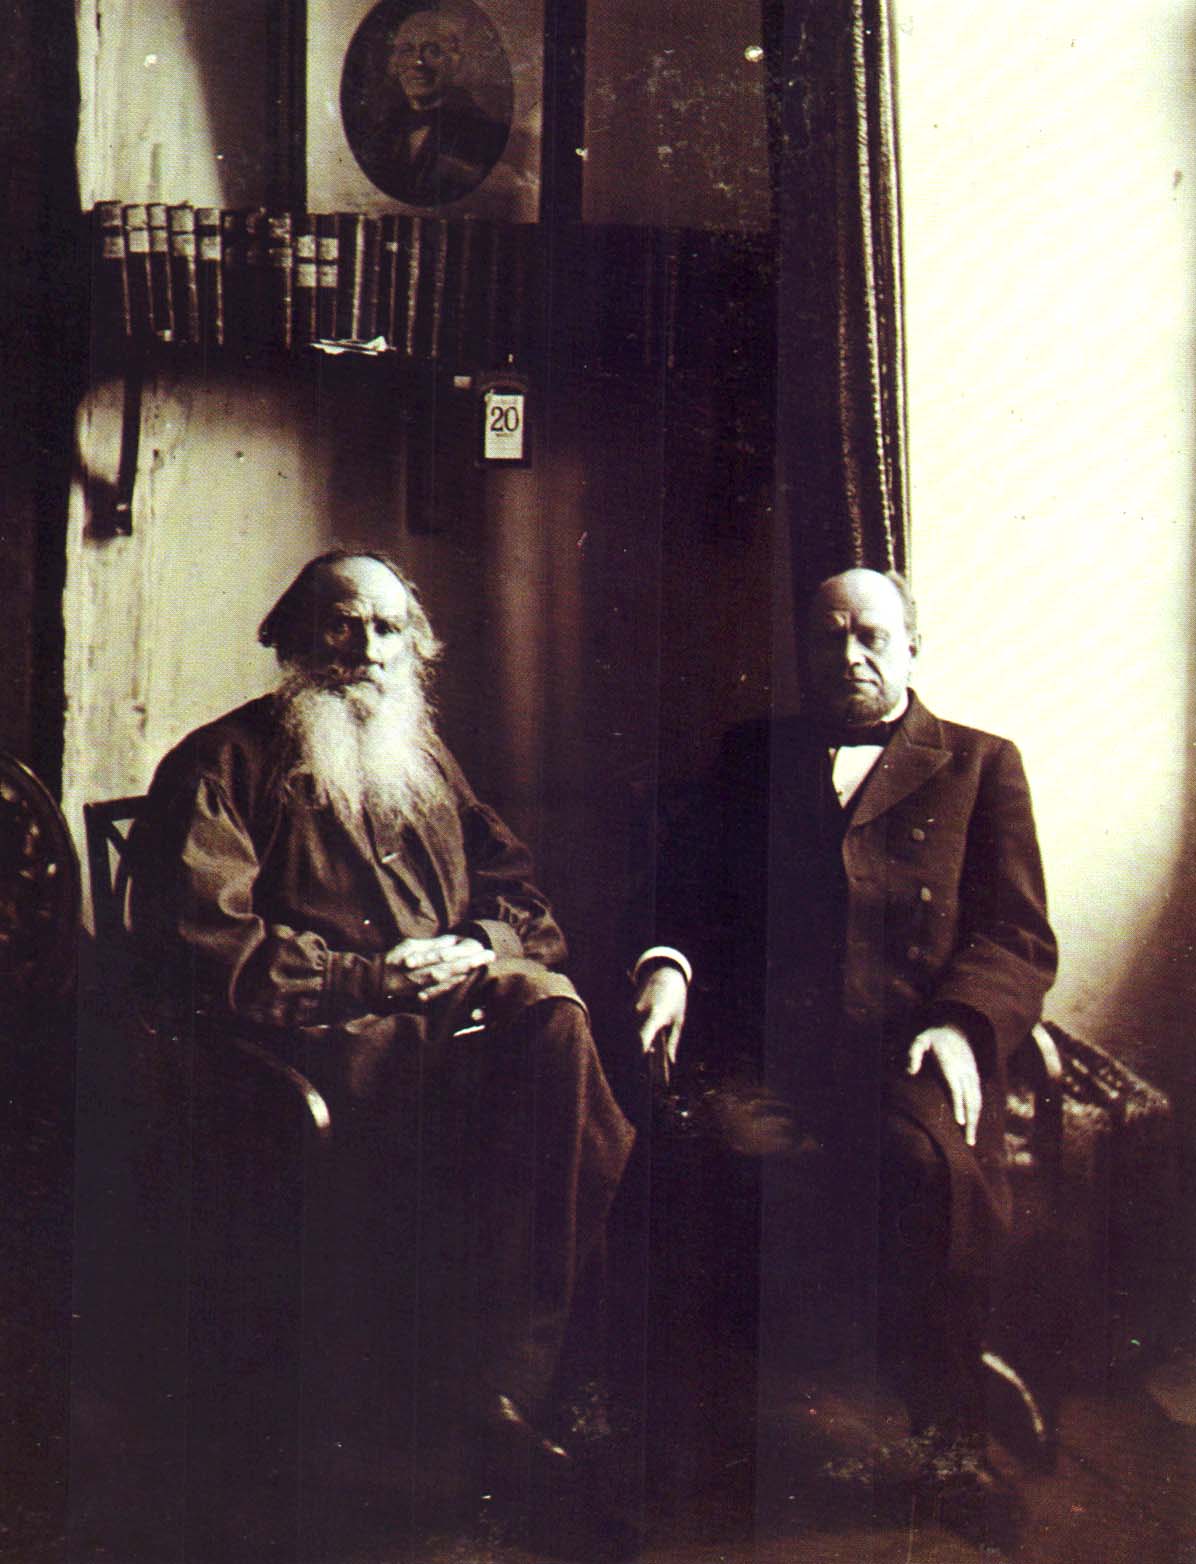 Л.Н. Толстой и Анатолий Федорович Кони (1844-1927), юрист, судебный деятель. Ясная Поляна. Фотография С.А. Толстой. 1904 г.